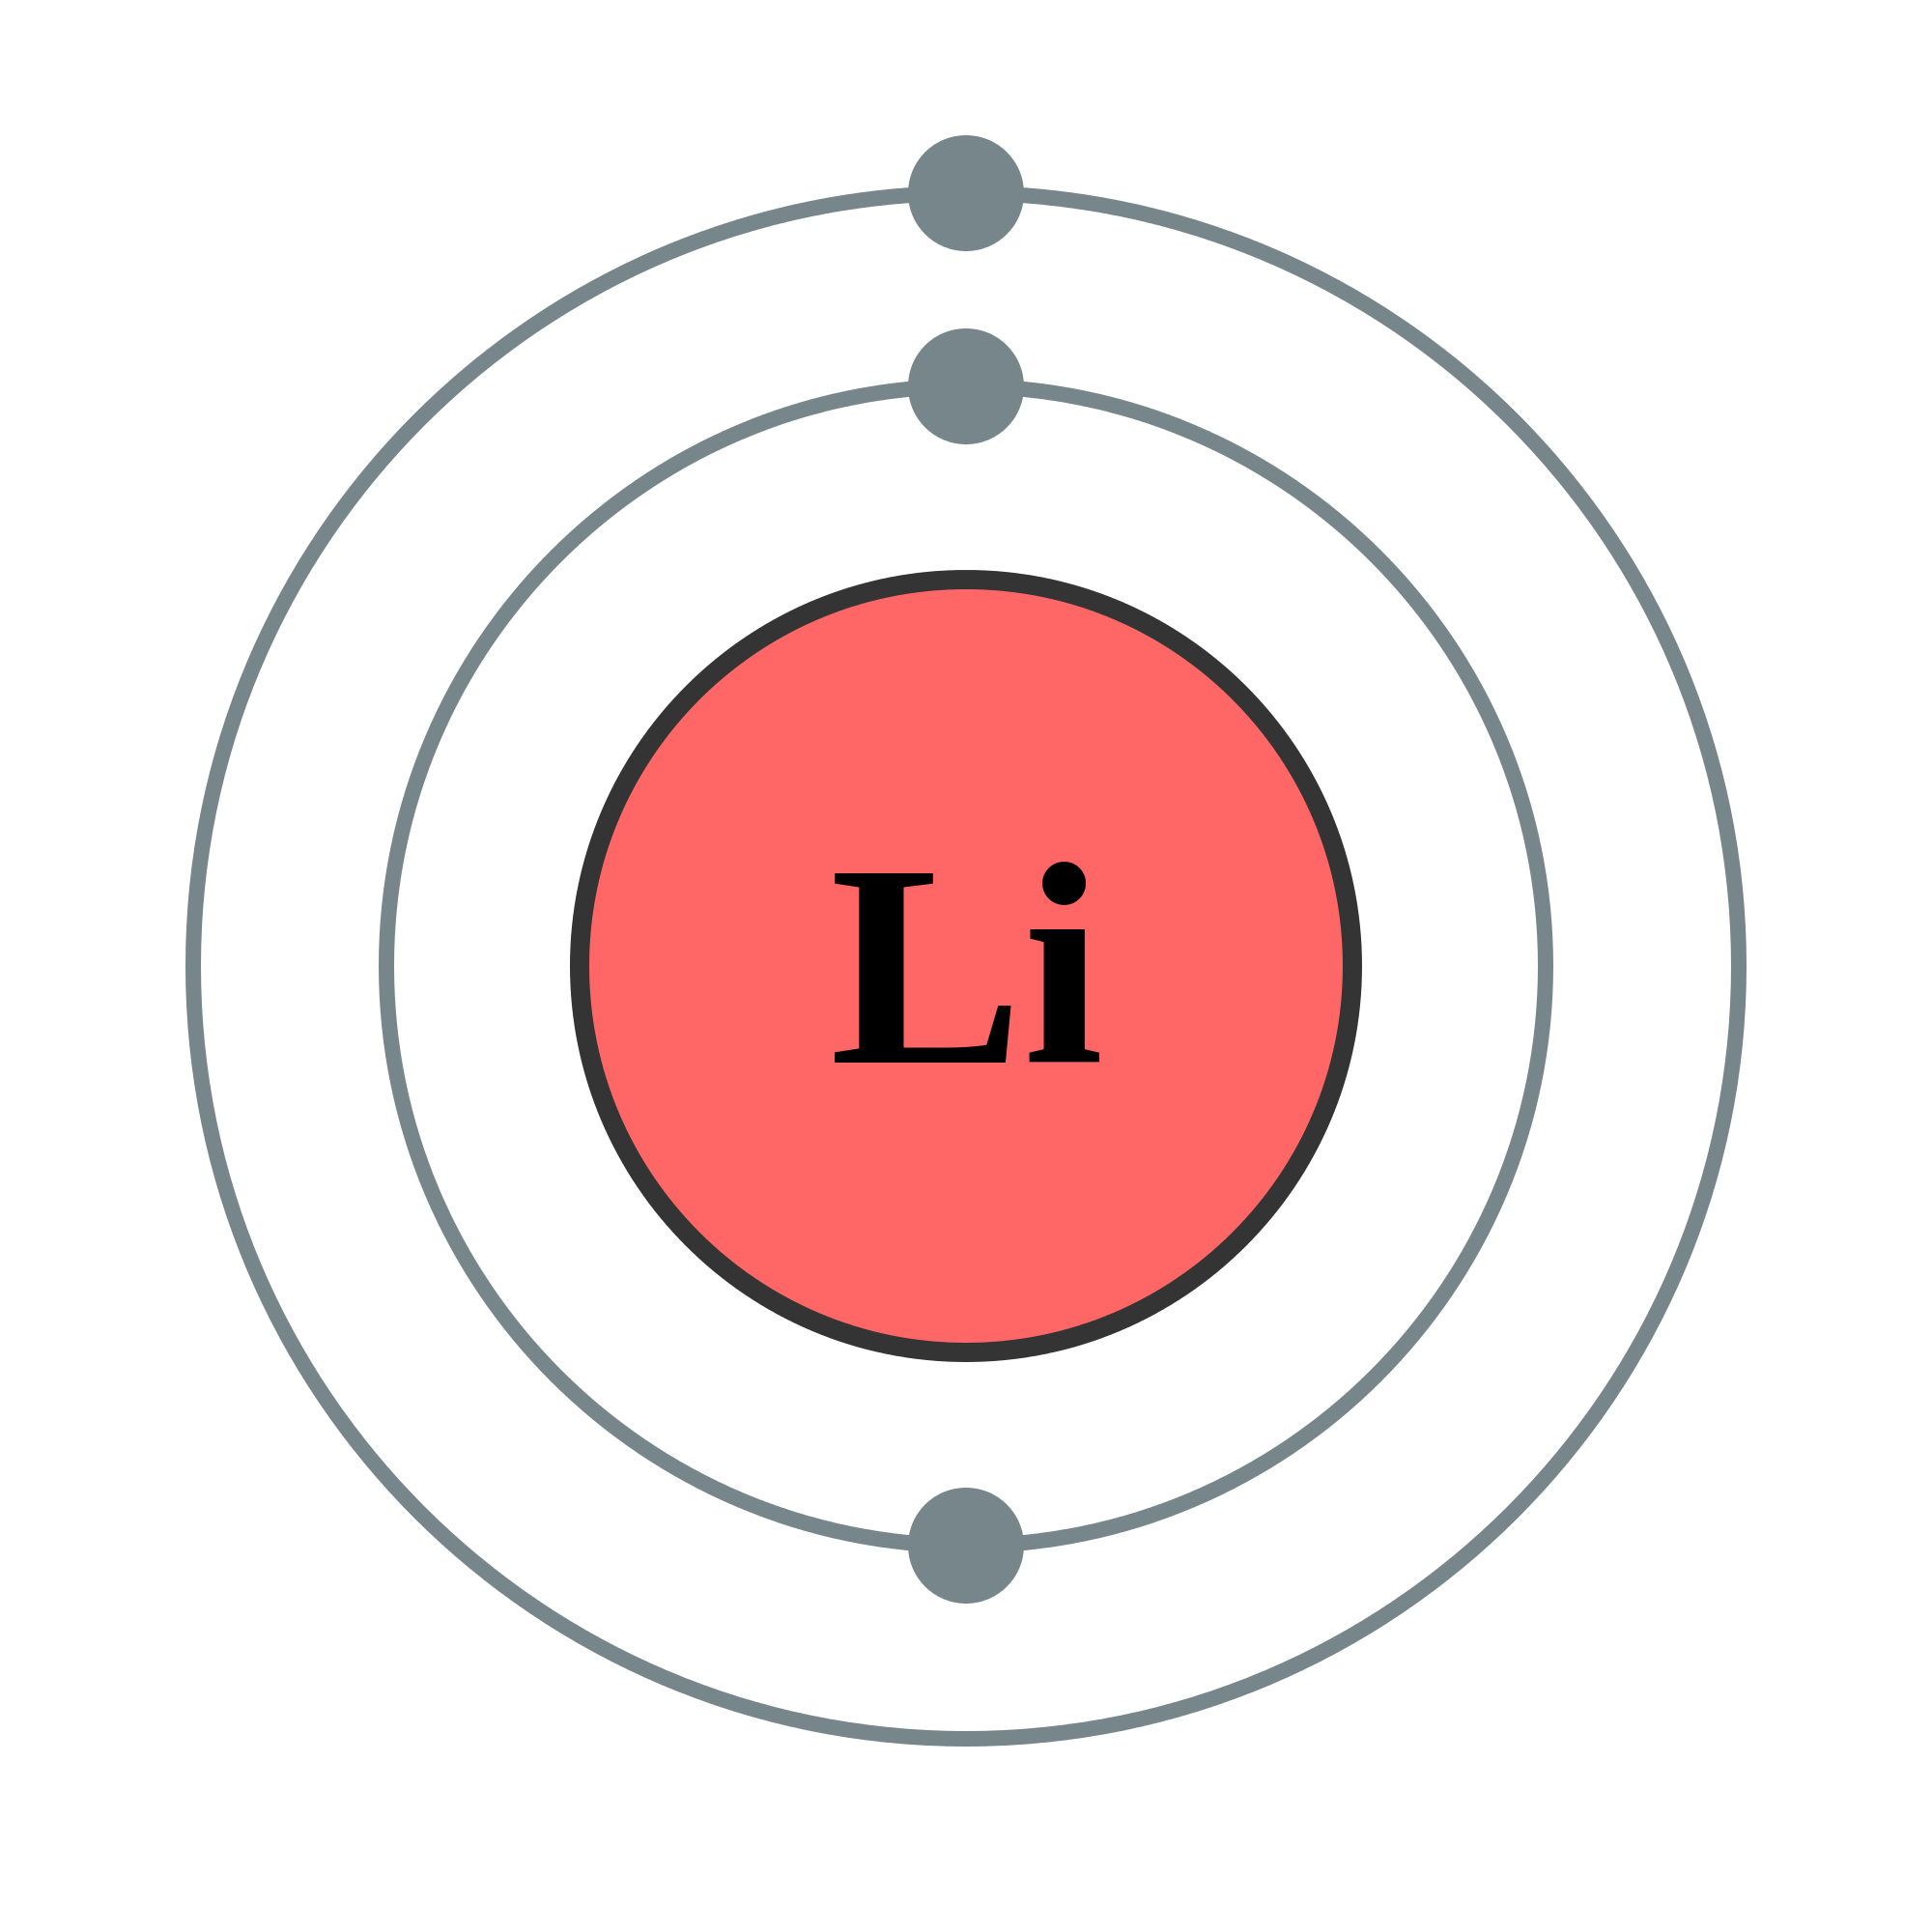 bohr model of lithium atom